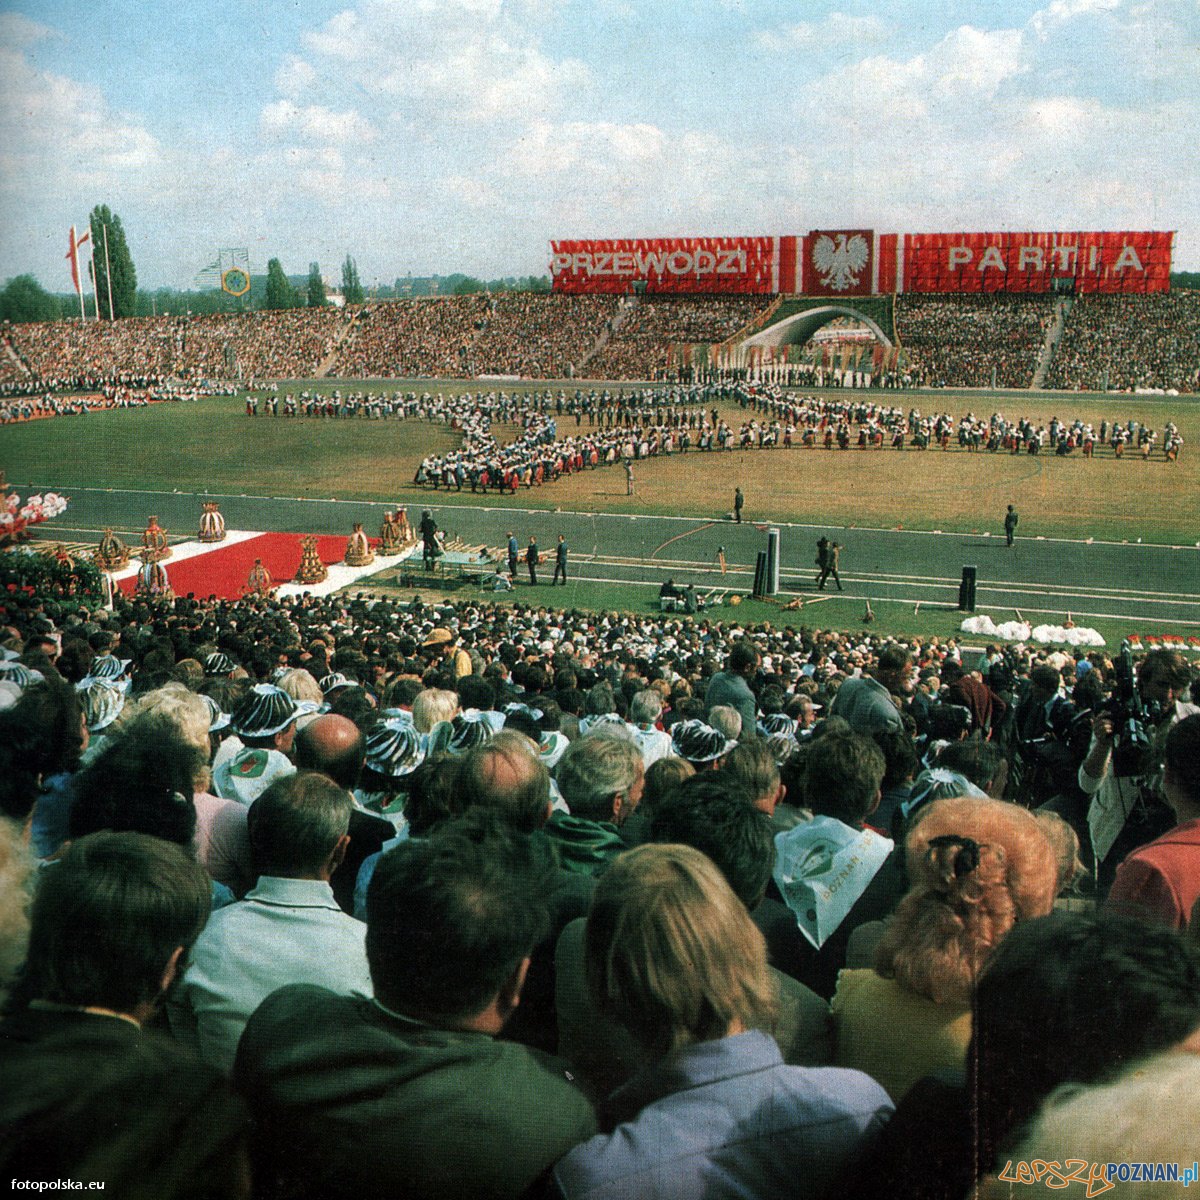 Centralne Dożynki na Stadionie 22 Lipca (8 września 1974) Foto: fotopolska